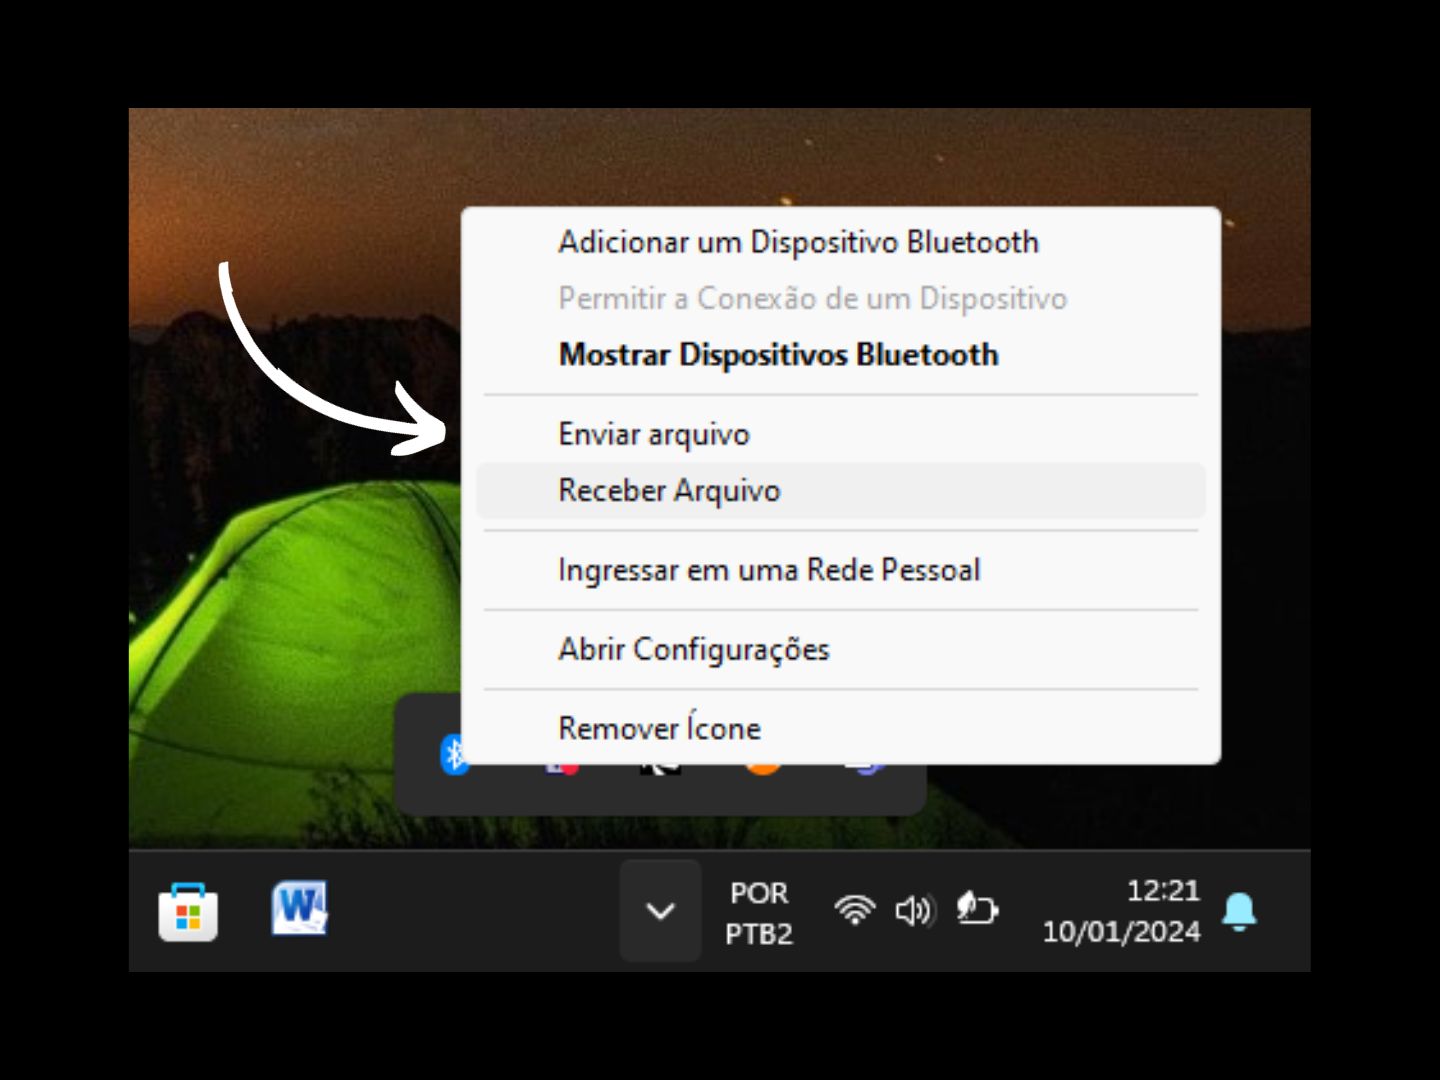 Imagem mostra seta apontando para "Enviar arquivos" onde você deve clicar para enviar arquivos via Bluetooth pelo computador